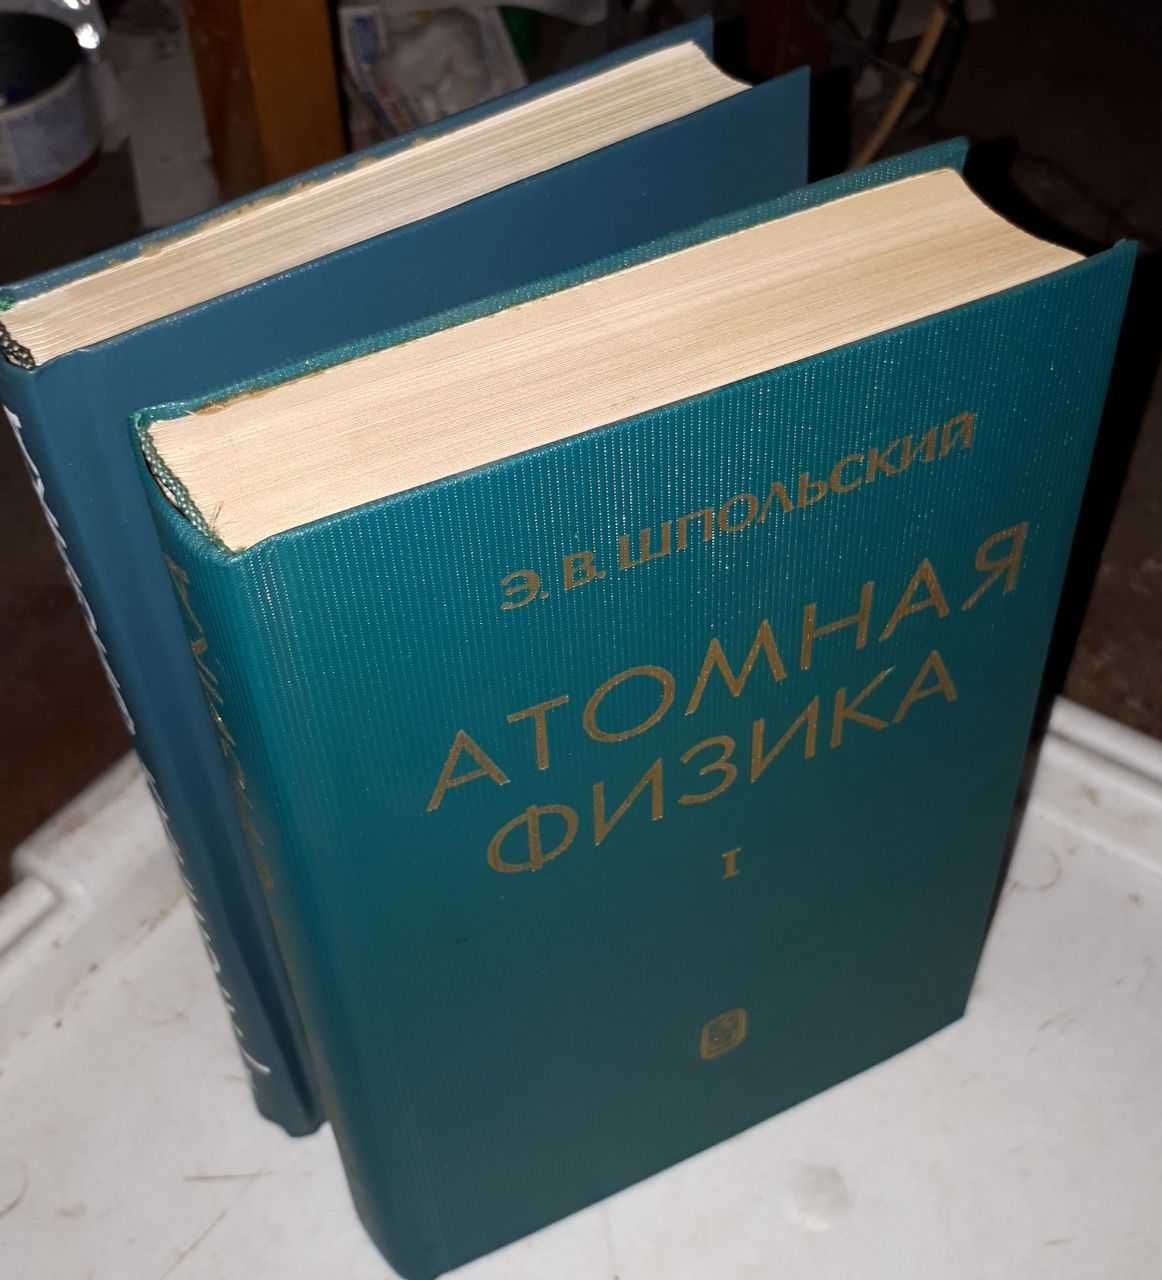 Шпольский Э.В.  Атомная физика (в двух томах)